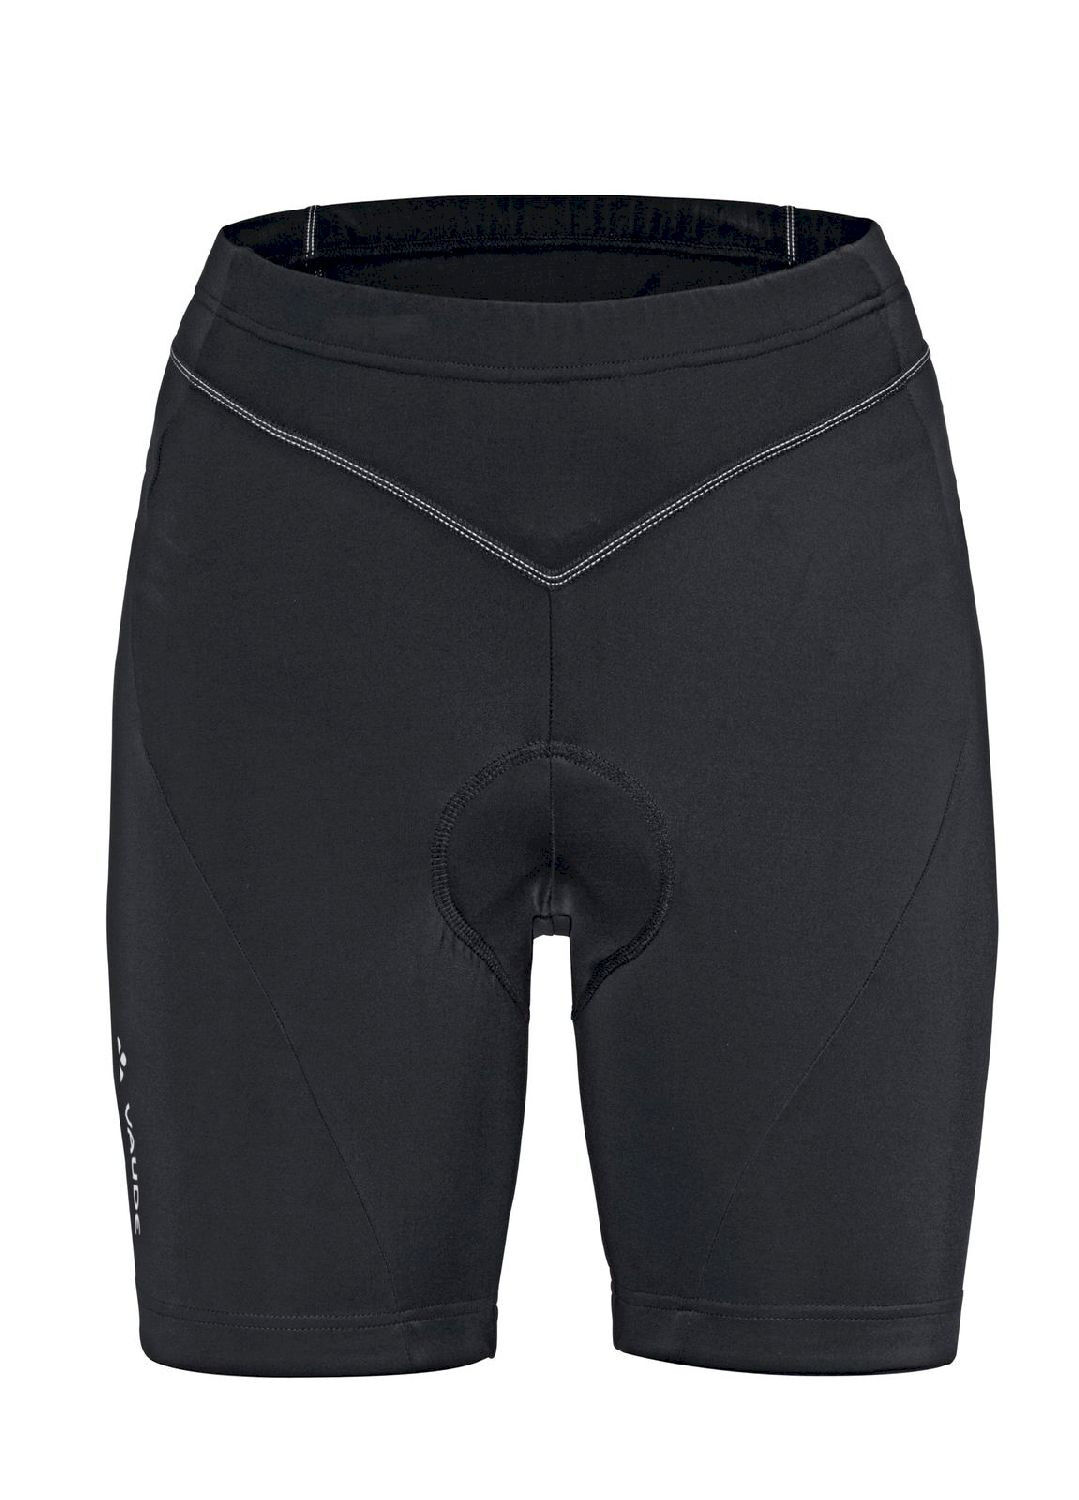 Vaude Active Pants - Pantalones ciclismo - Mujer